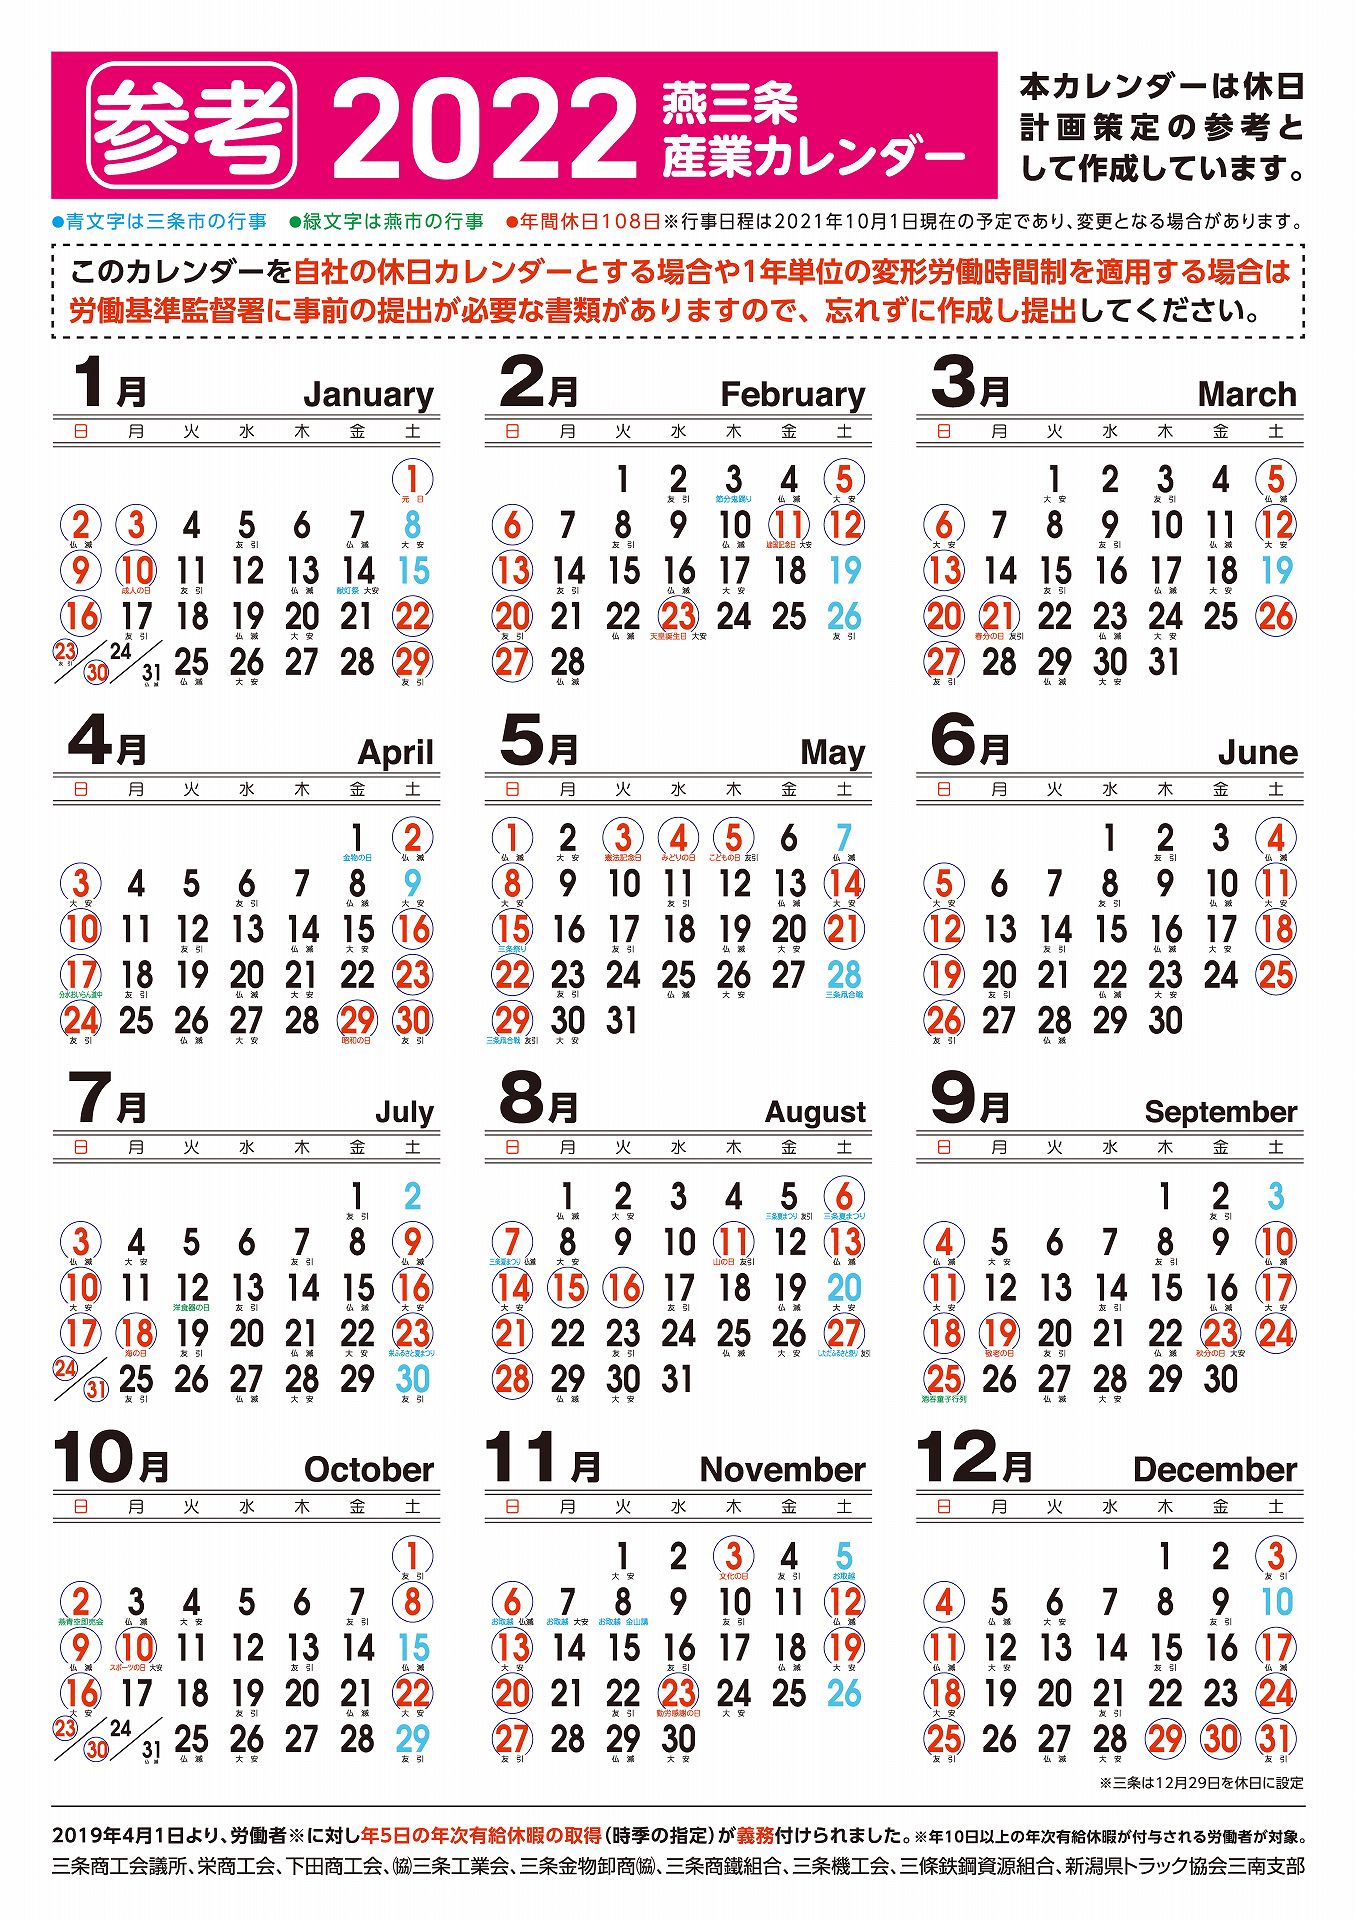 産業カレンダー 三条商工会議所